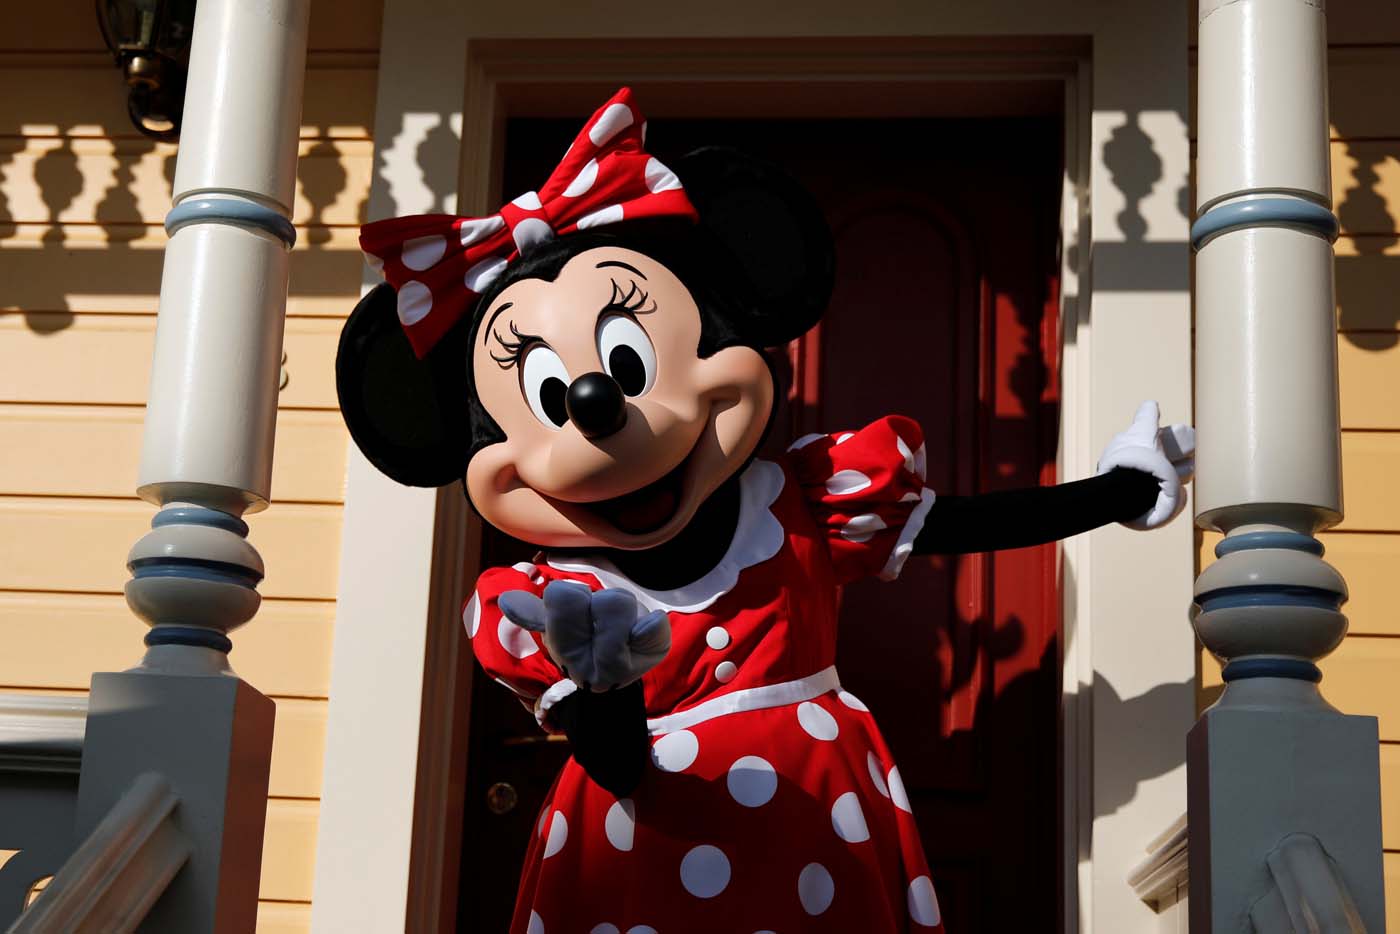 VIRAL: El video de la golpiza que le dio Minnie Mouse a un jefe seguridad mientras Mickey y Goofy intentaban separarlos